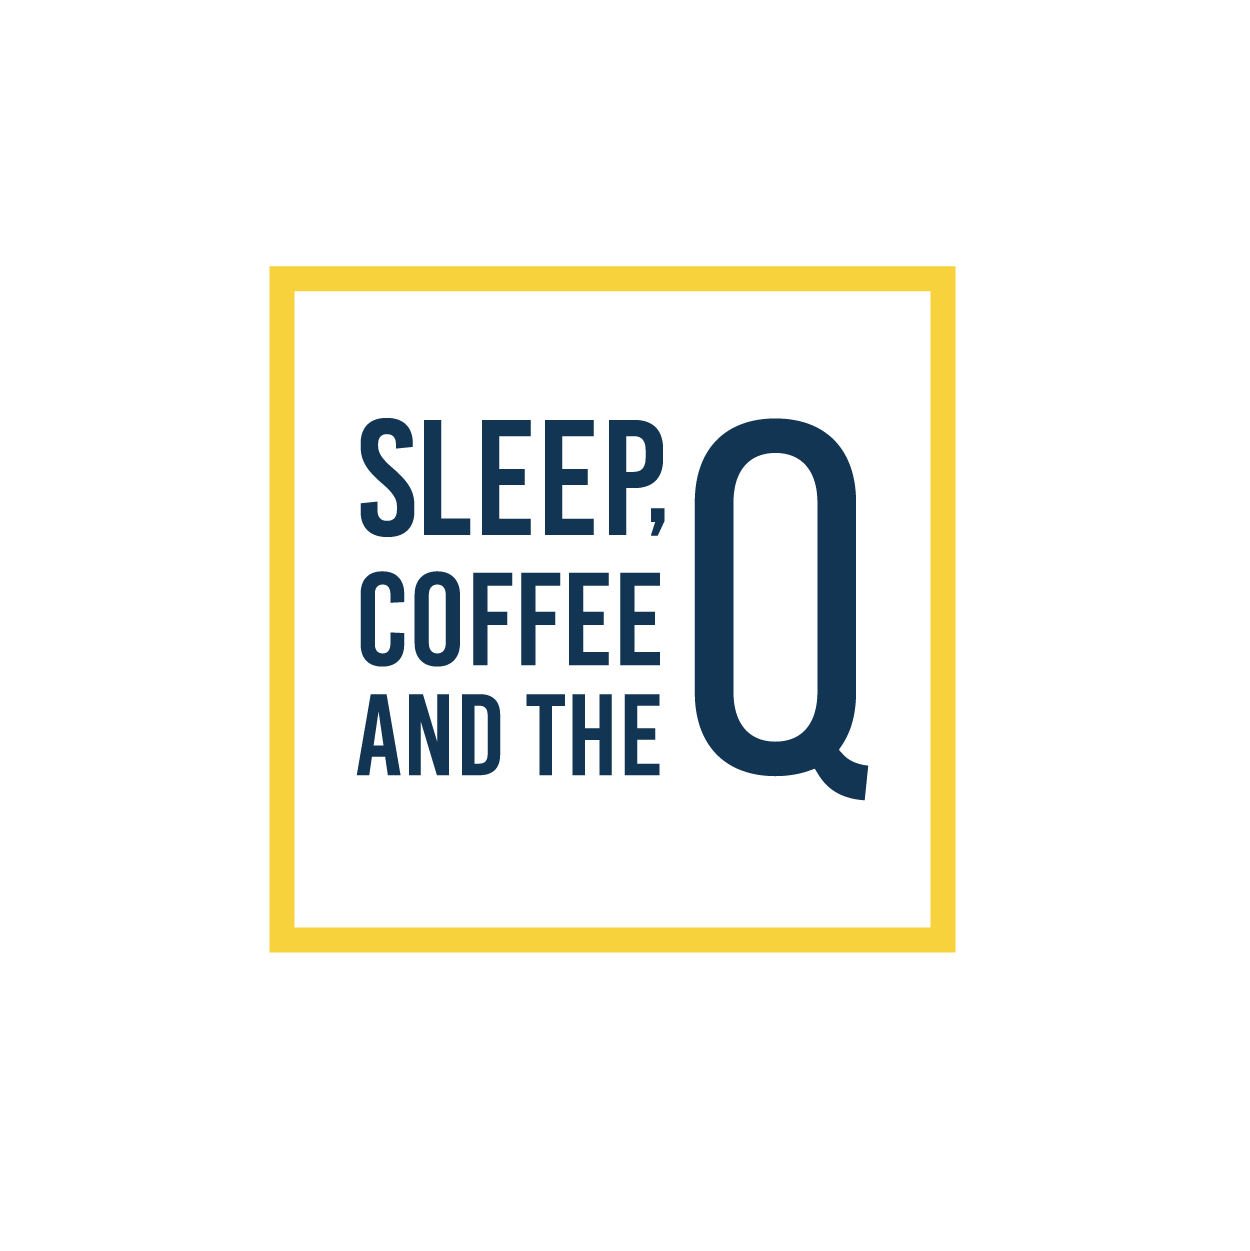 Sleep, Coffee and the Q